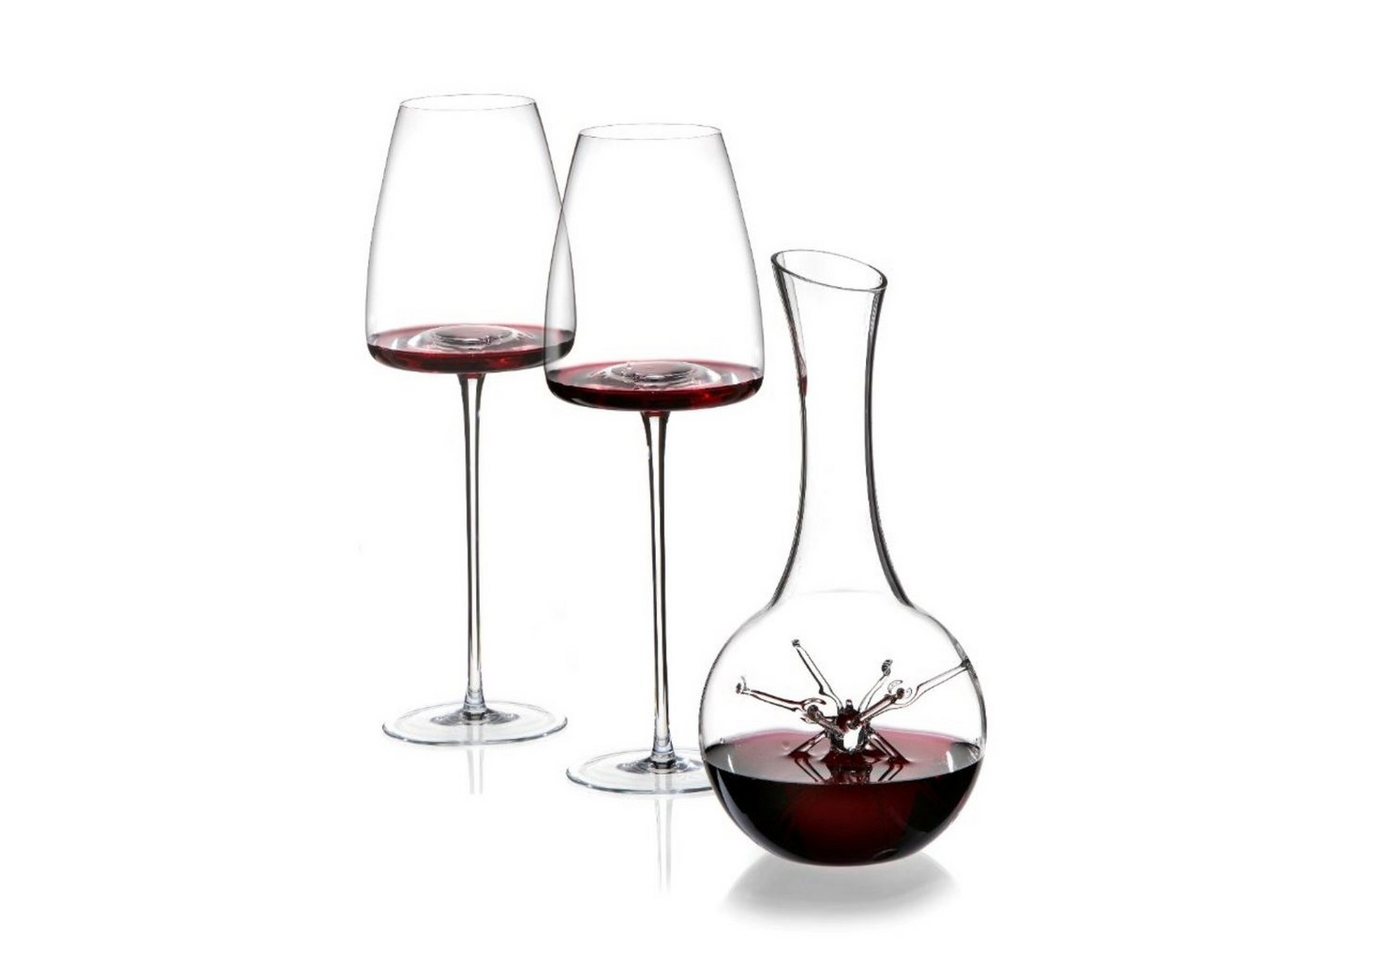 ZIEHER Weinglas Zieher Star mini + Vision Straight, Set Dekanter/Karaffe mit 2 Gläsern von ZIEHER